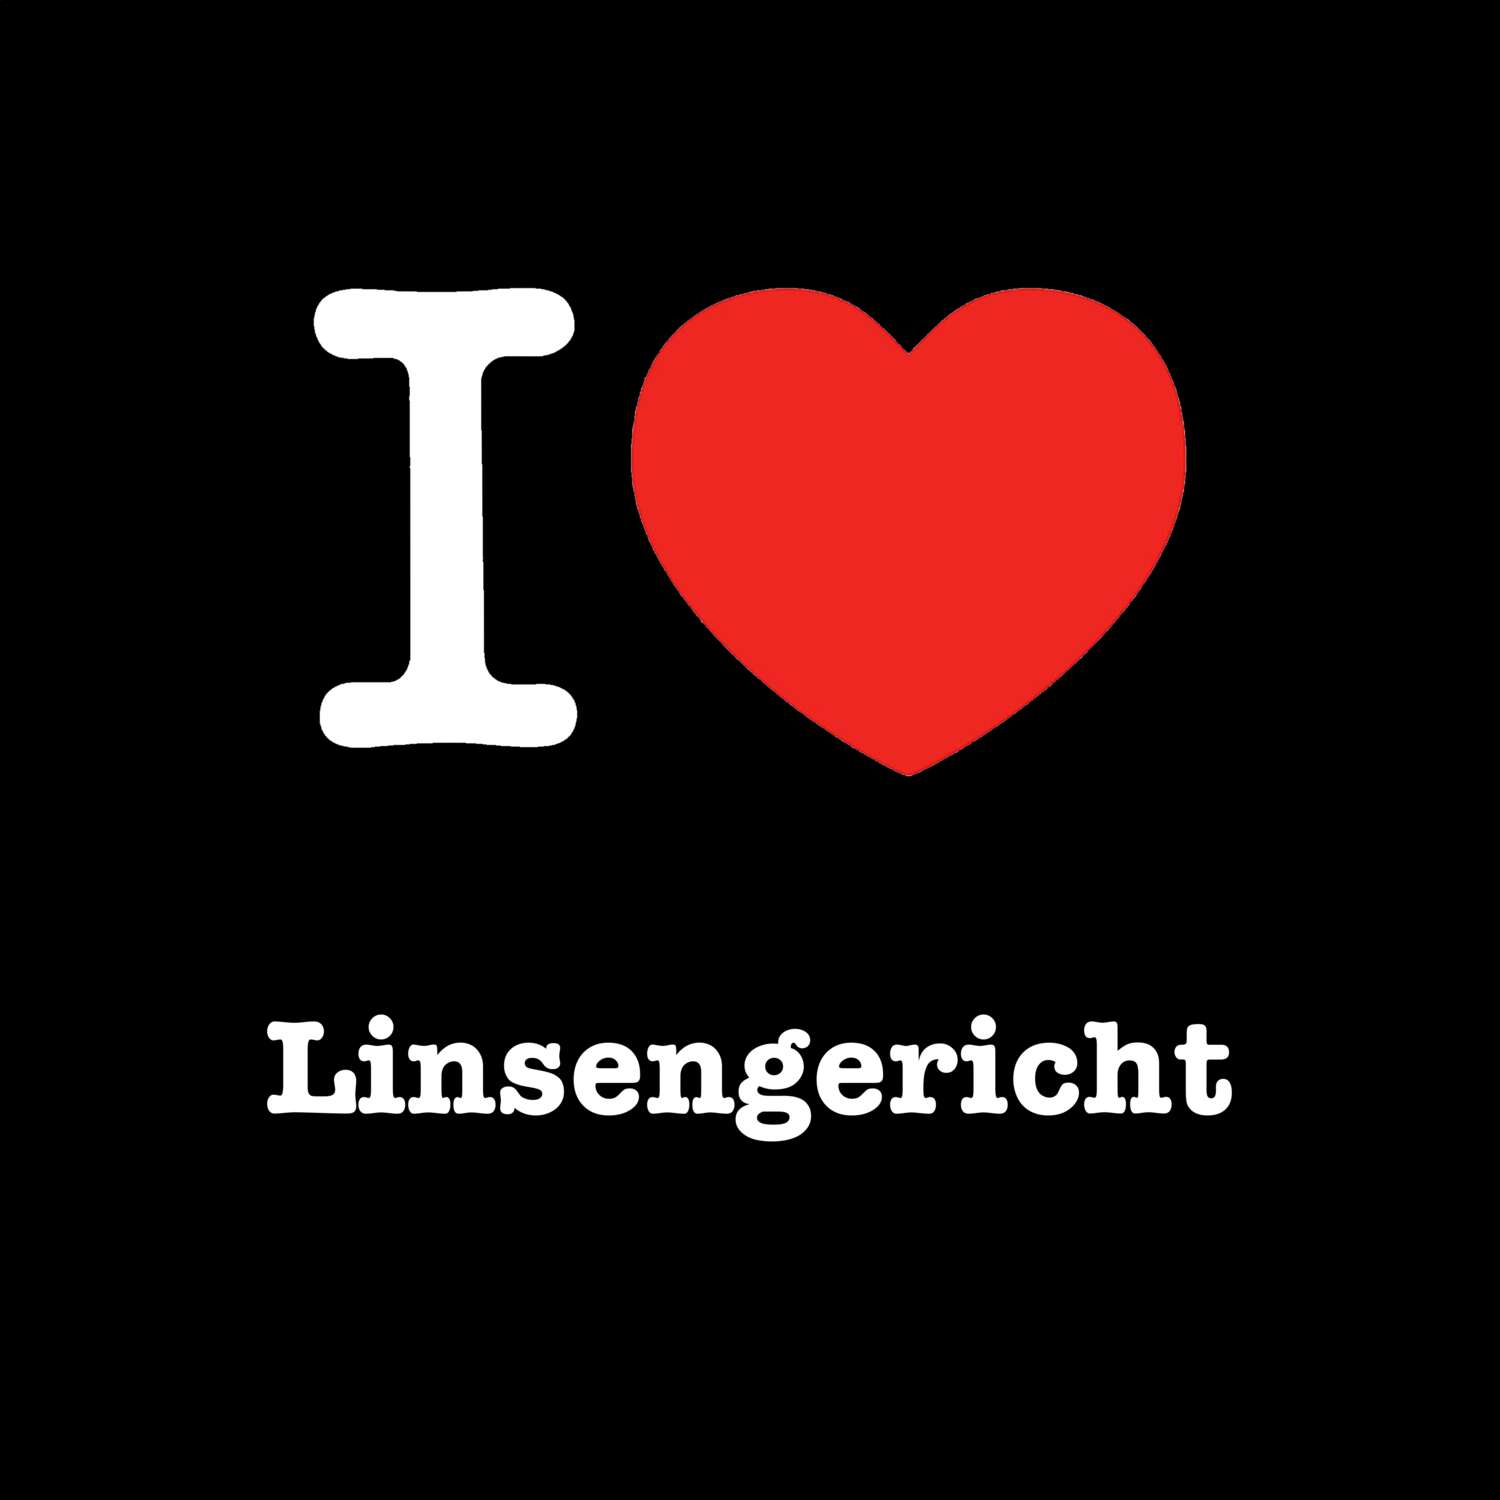 Linsengericht T-Shirt »I love«